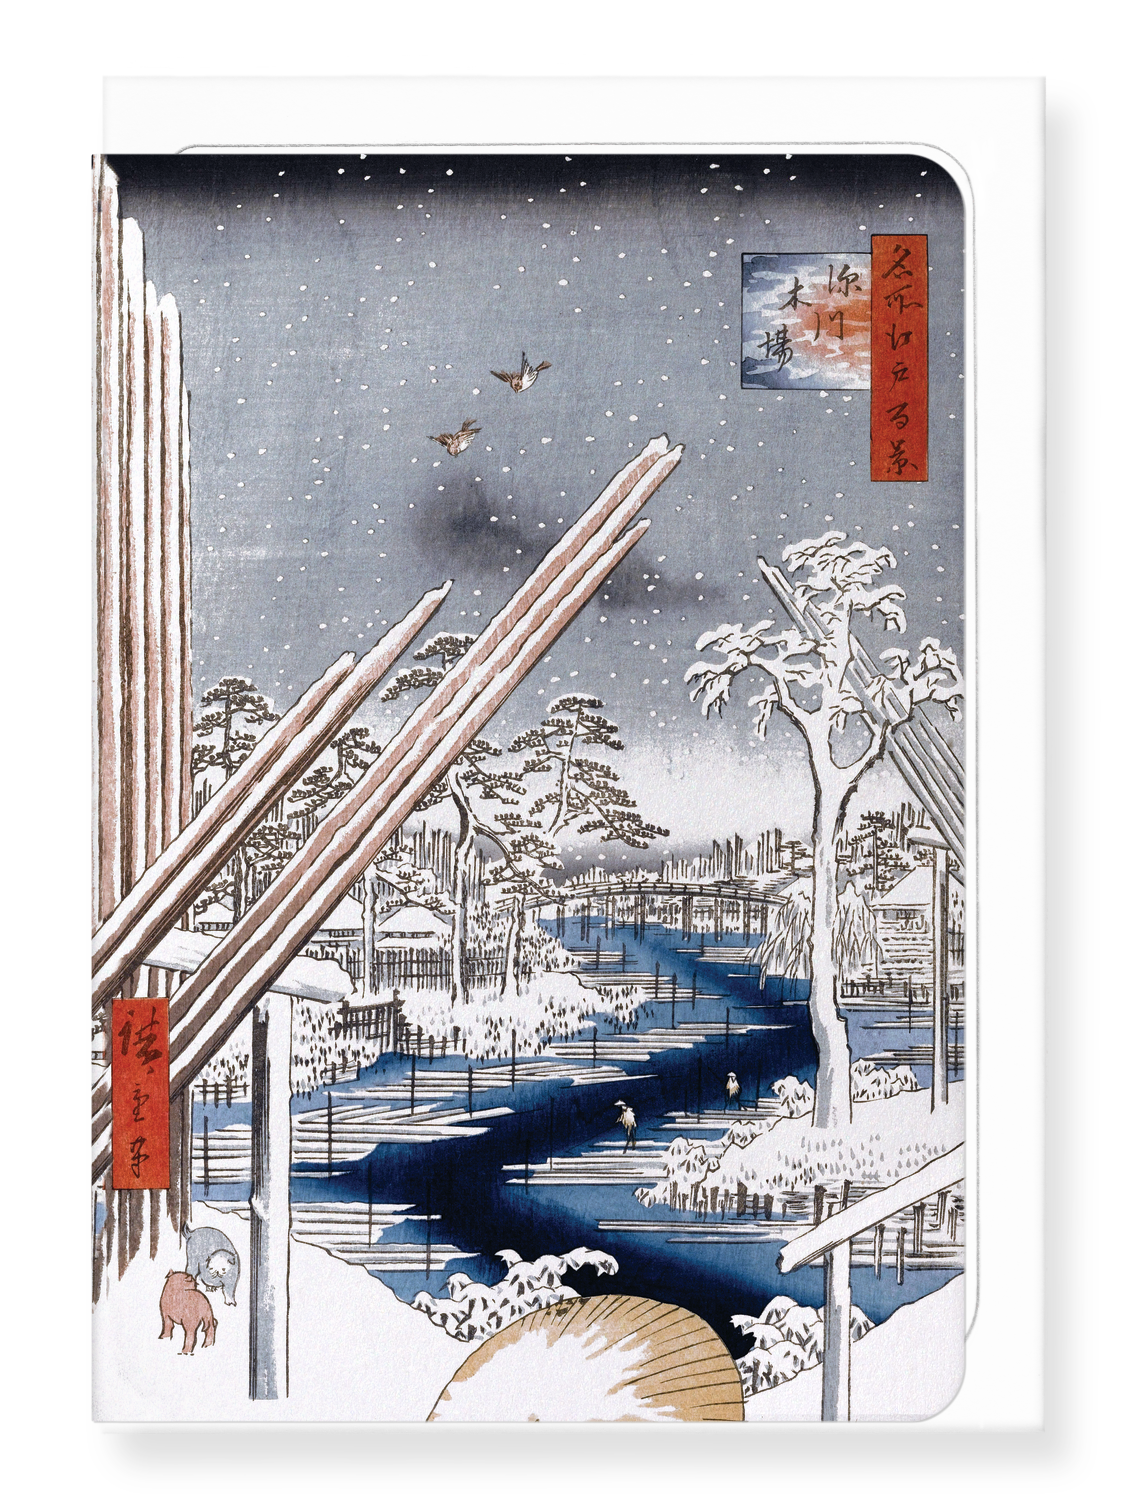 Ezen Designs - Fukagawa Lumberyards (1856) - Greeting Card - Front